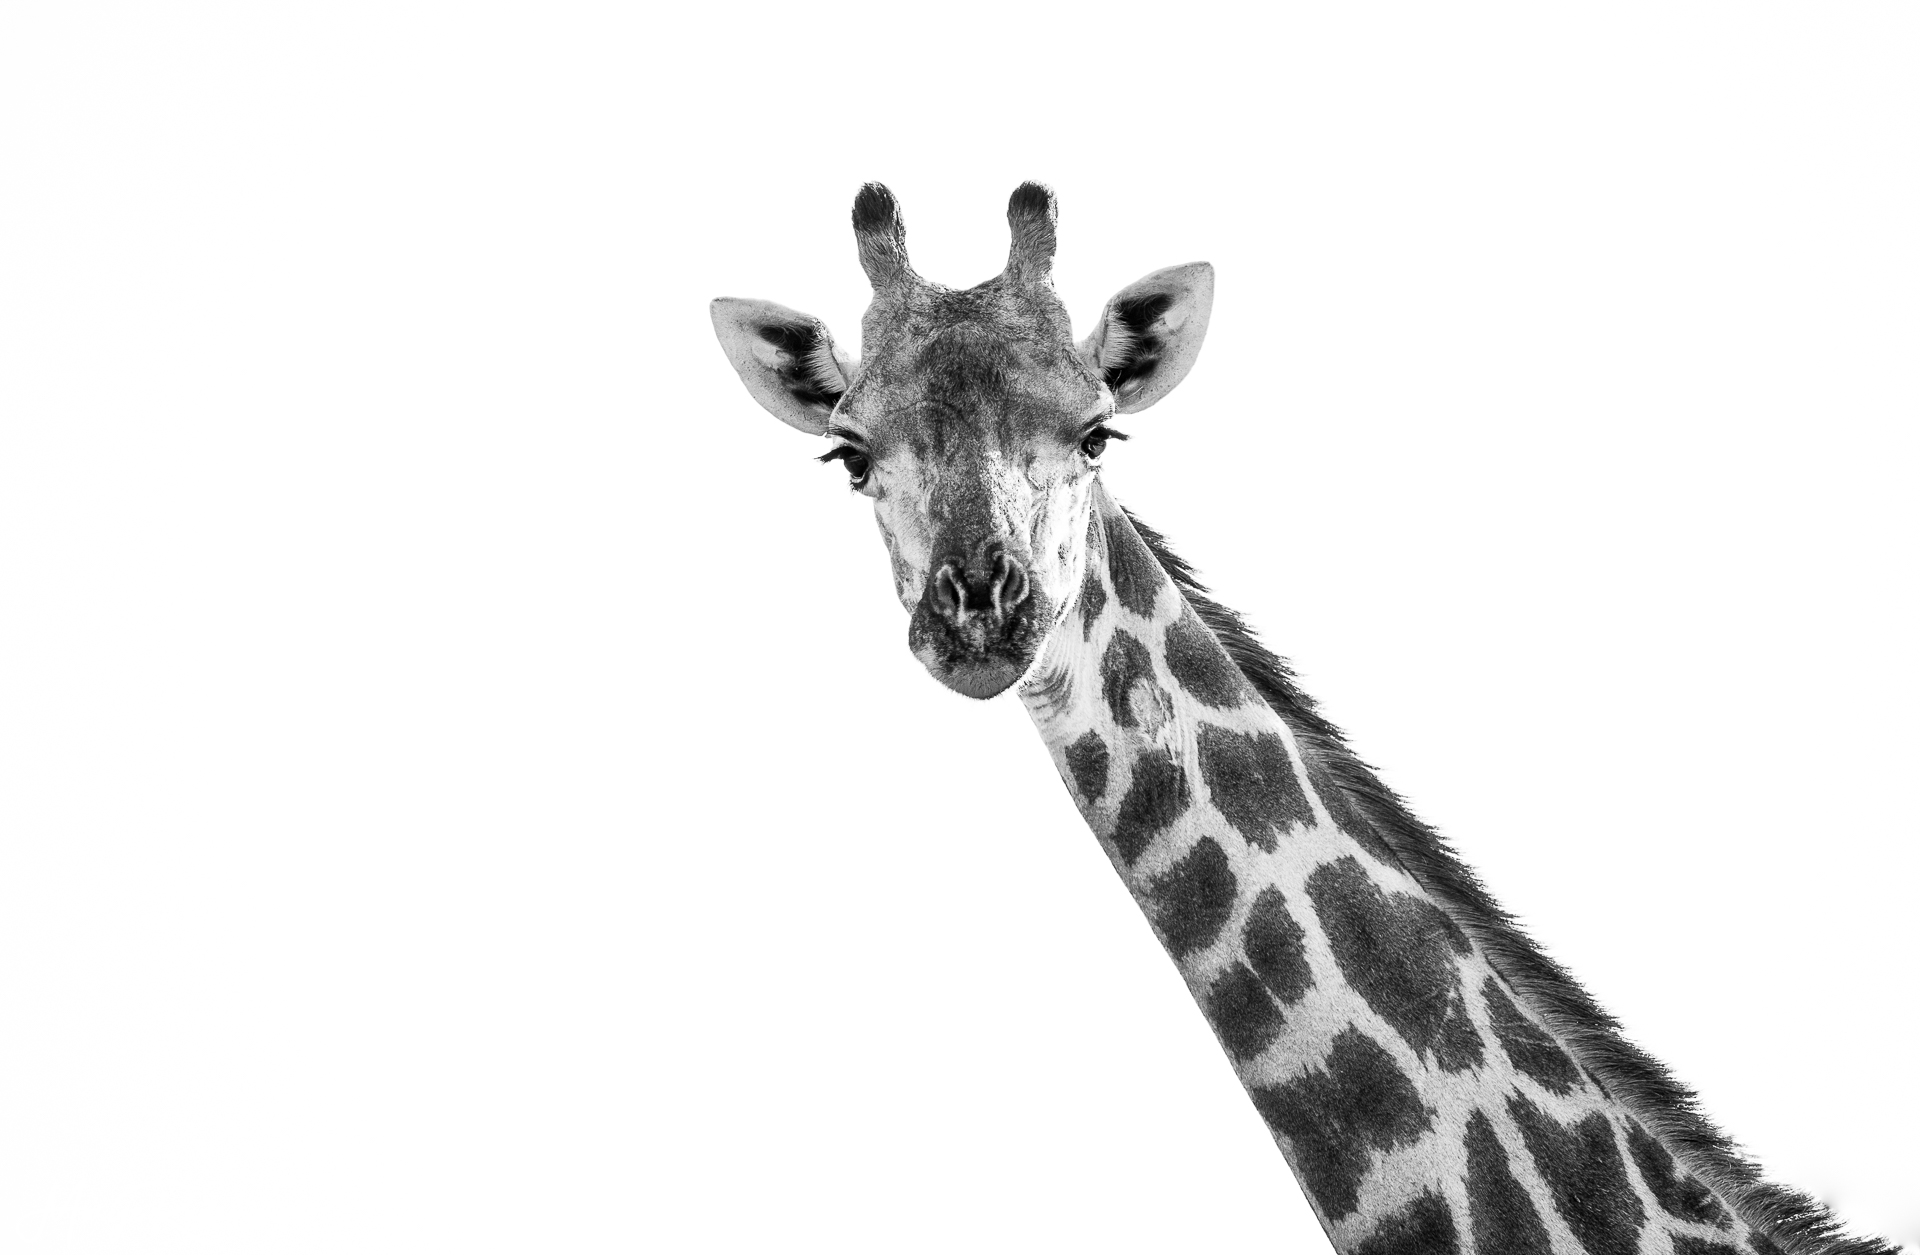 Captured at Kruger National Park on 08 Jun, 2018 by Marije Rademaker